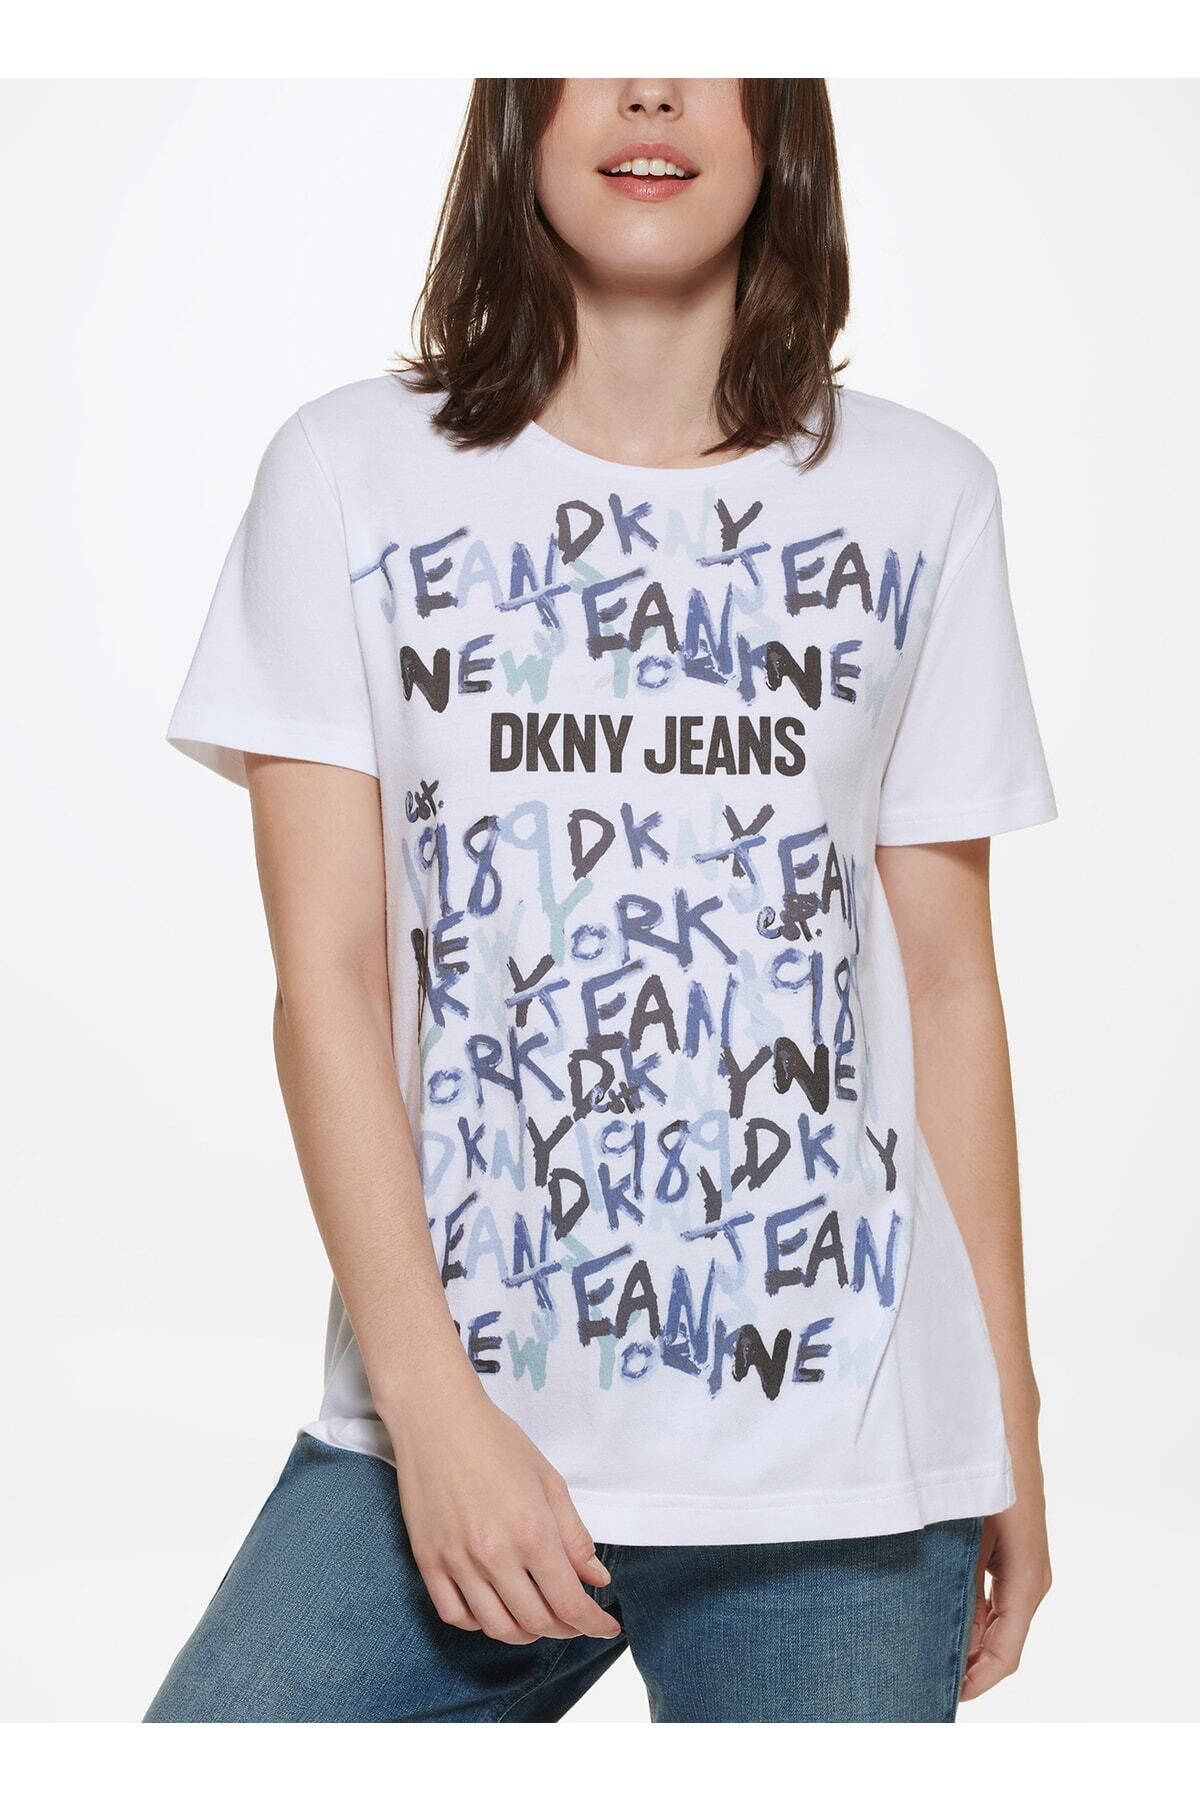 Dkny Jeans T-Shirt - White - Regular fit - Trendyol